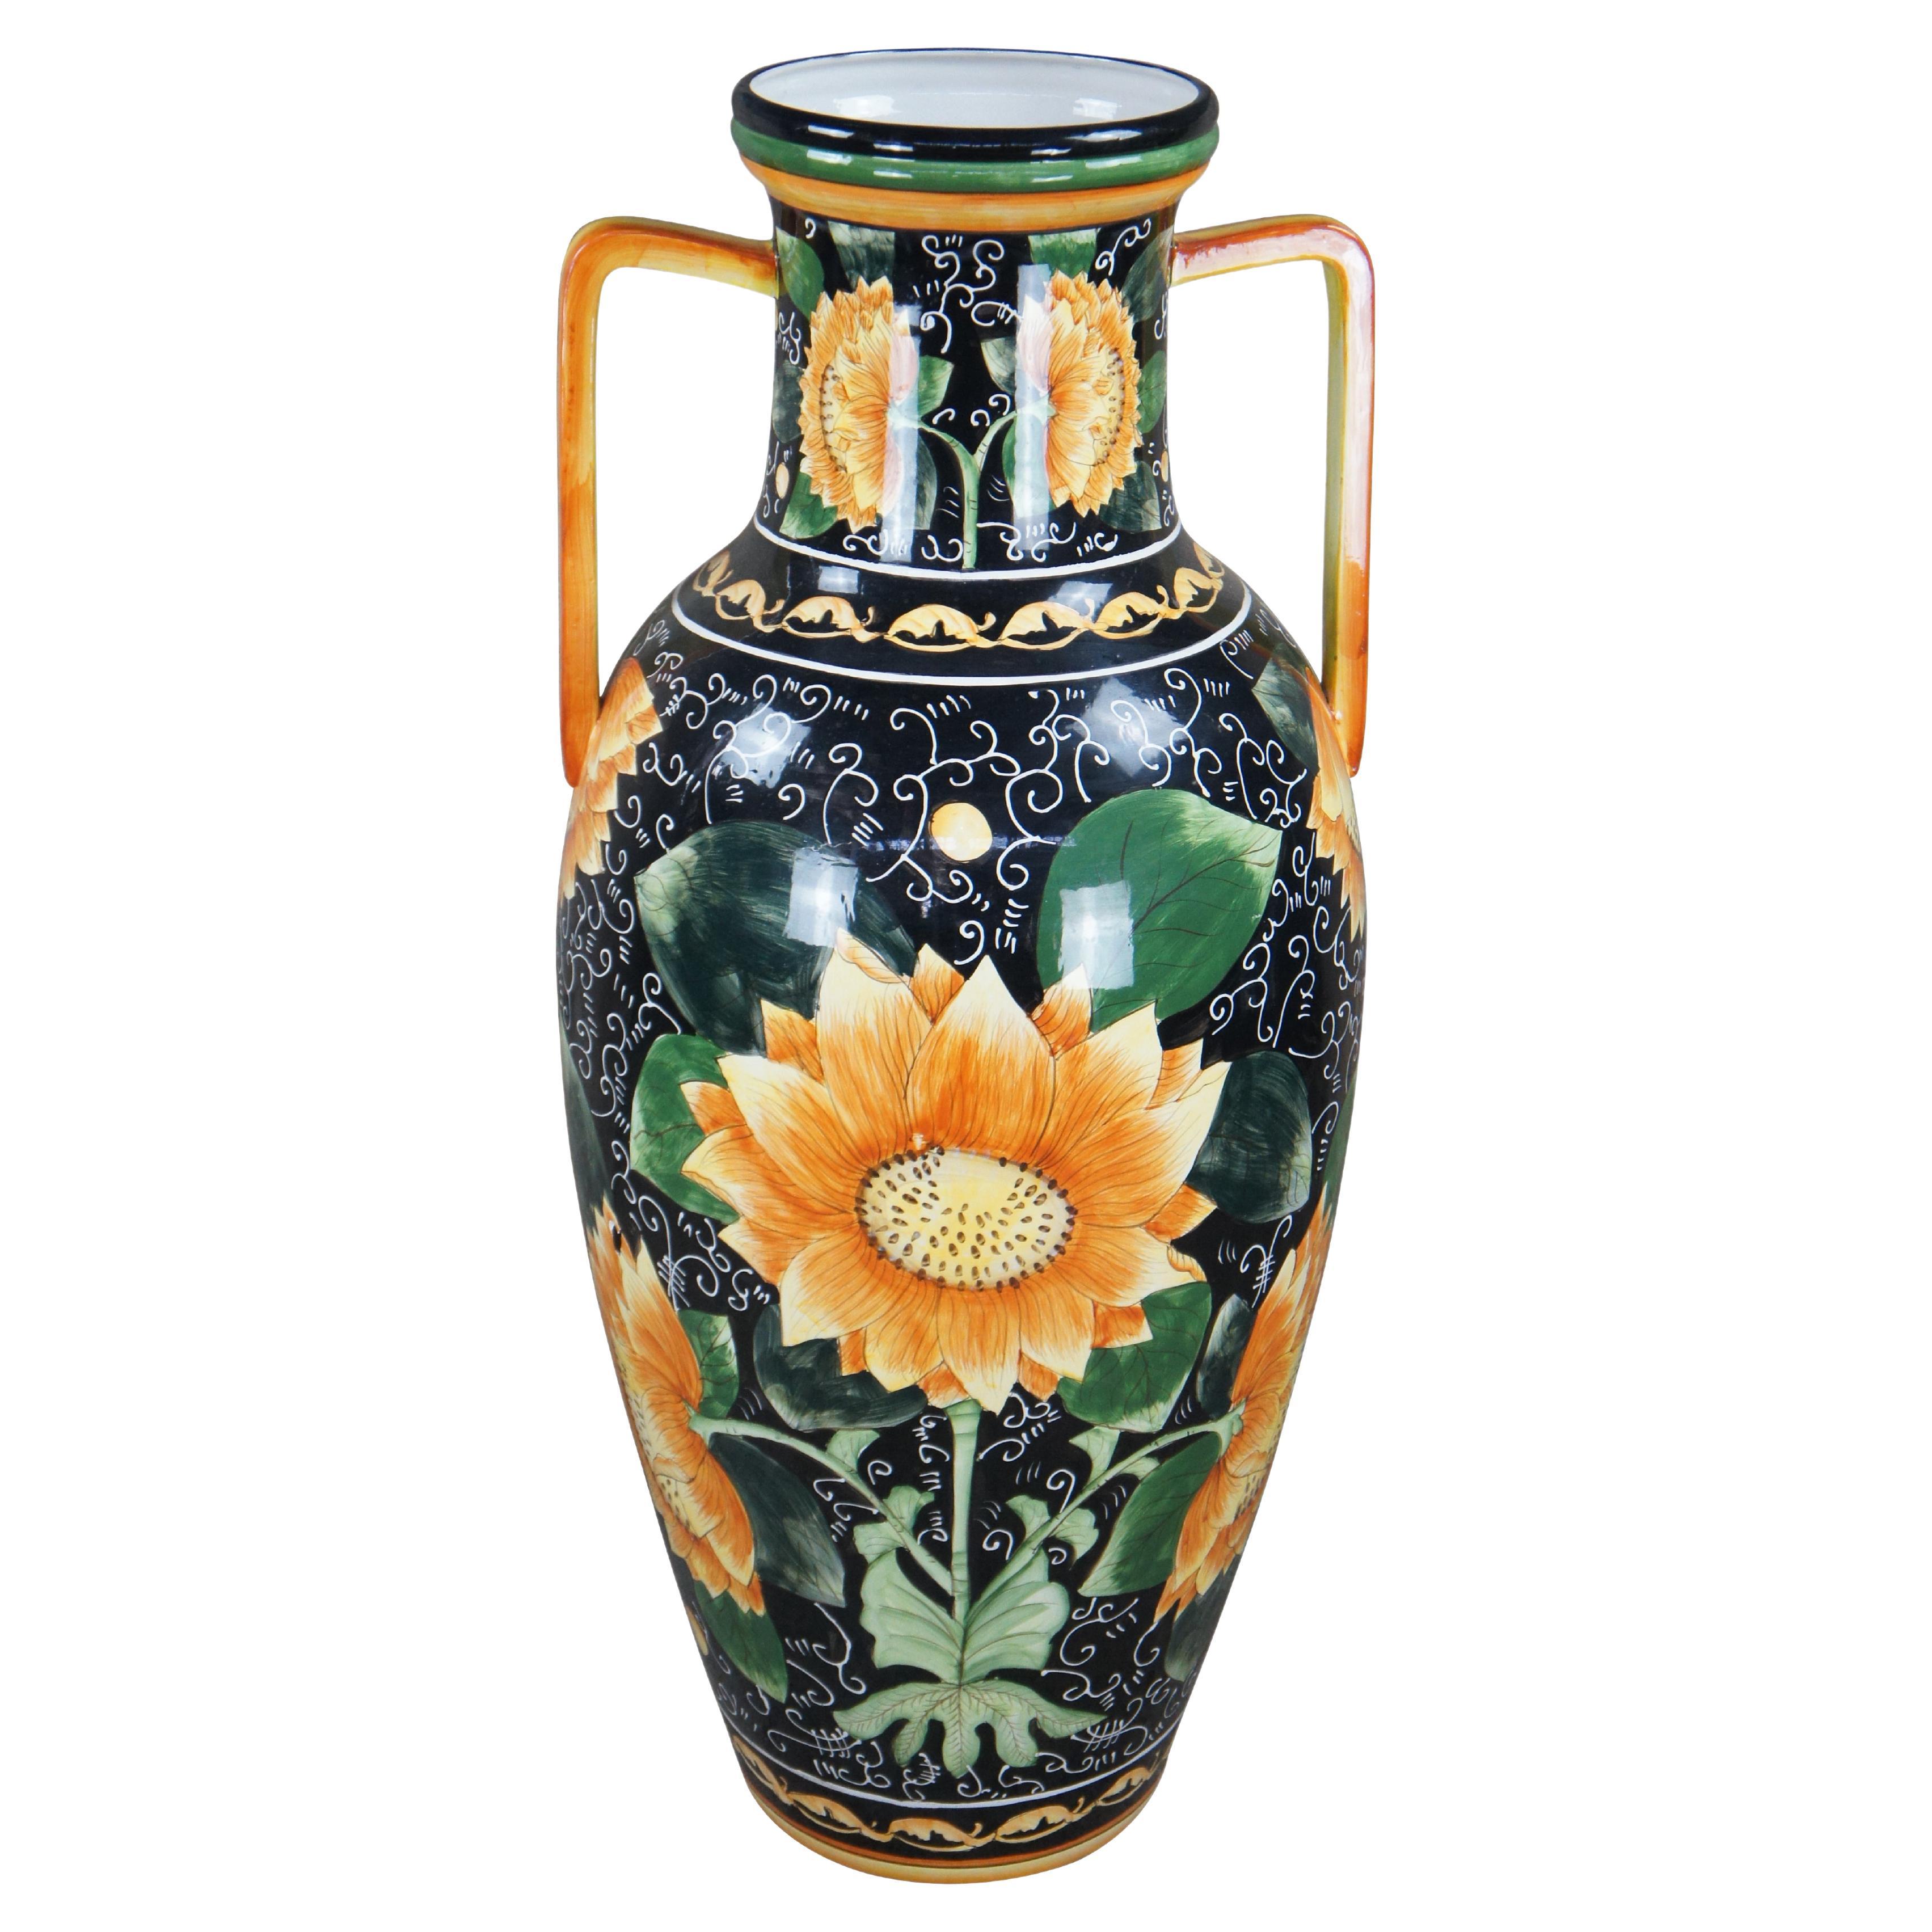 Vintage-Stehlampe aus Porzellan im italienischen Stil mit Sonnenblumengriff und Trophäenurne im Vintage-Stil 43"